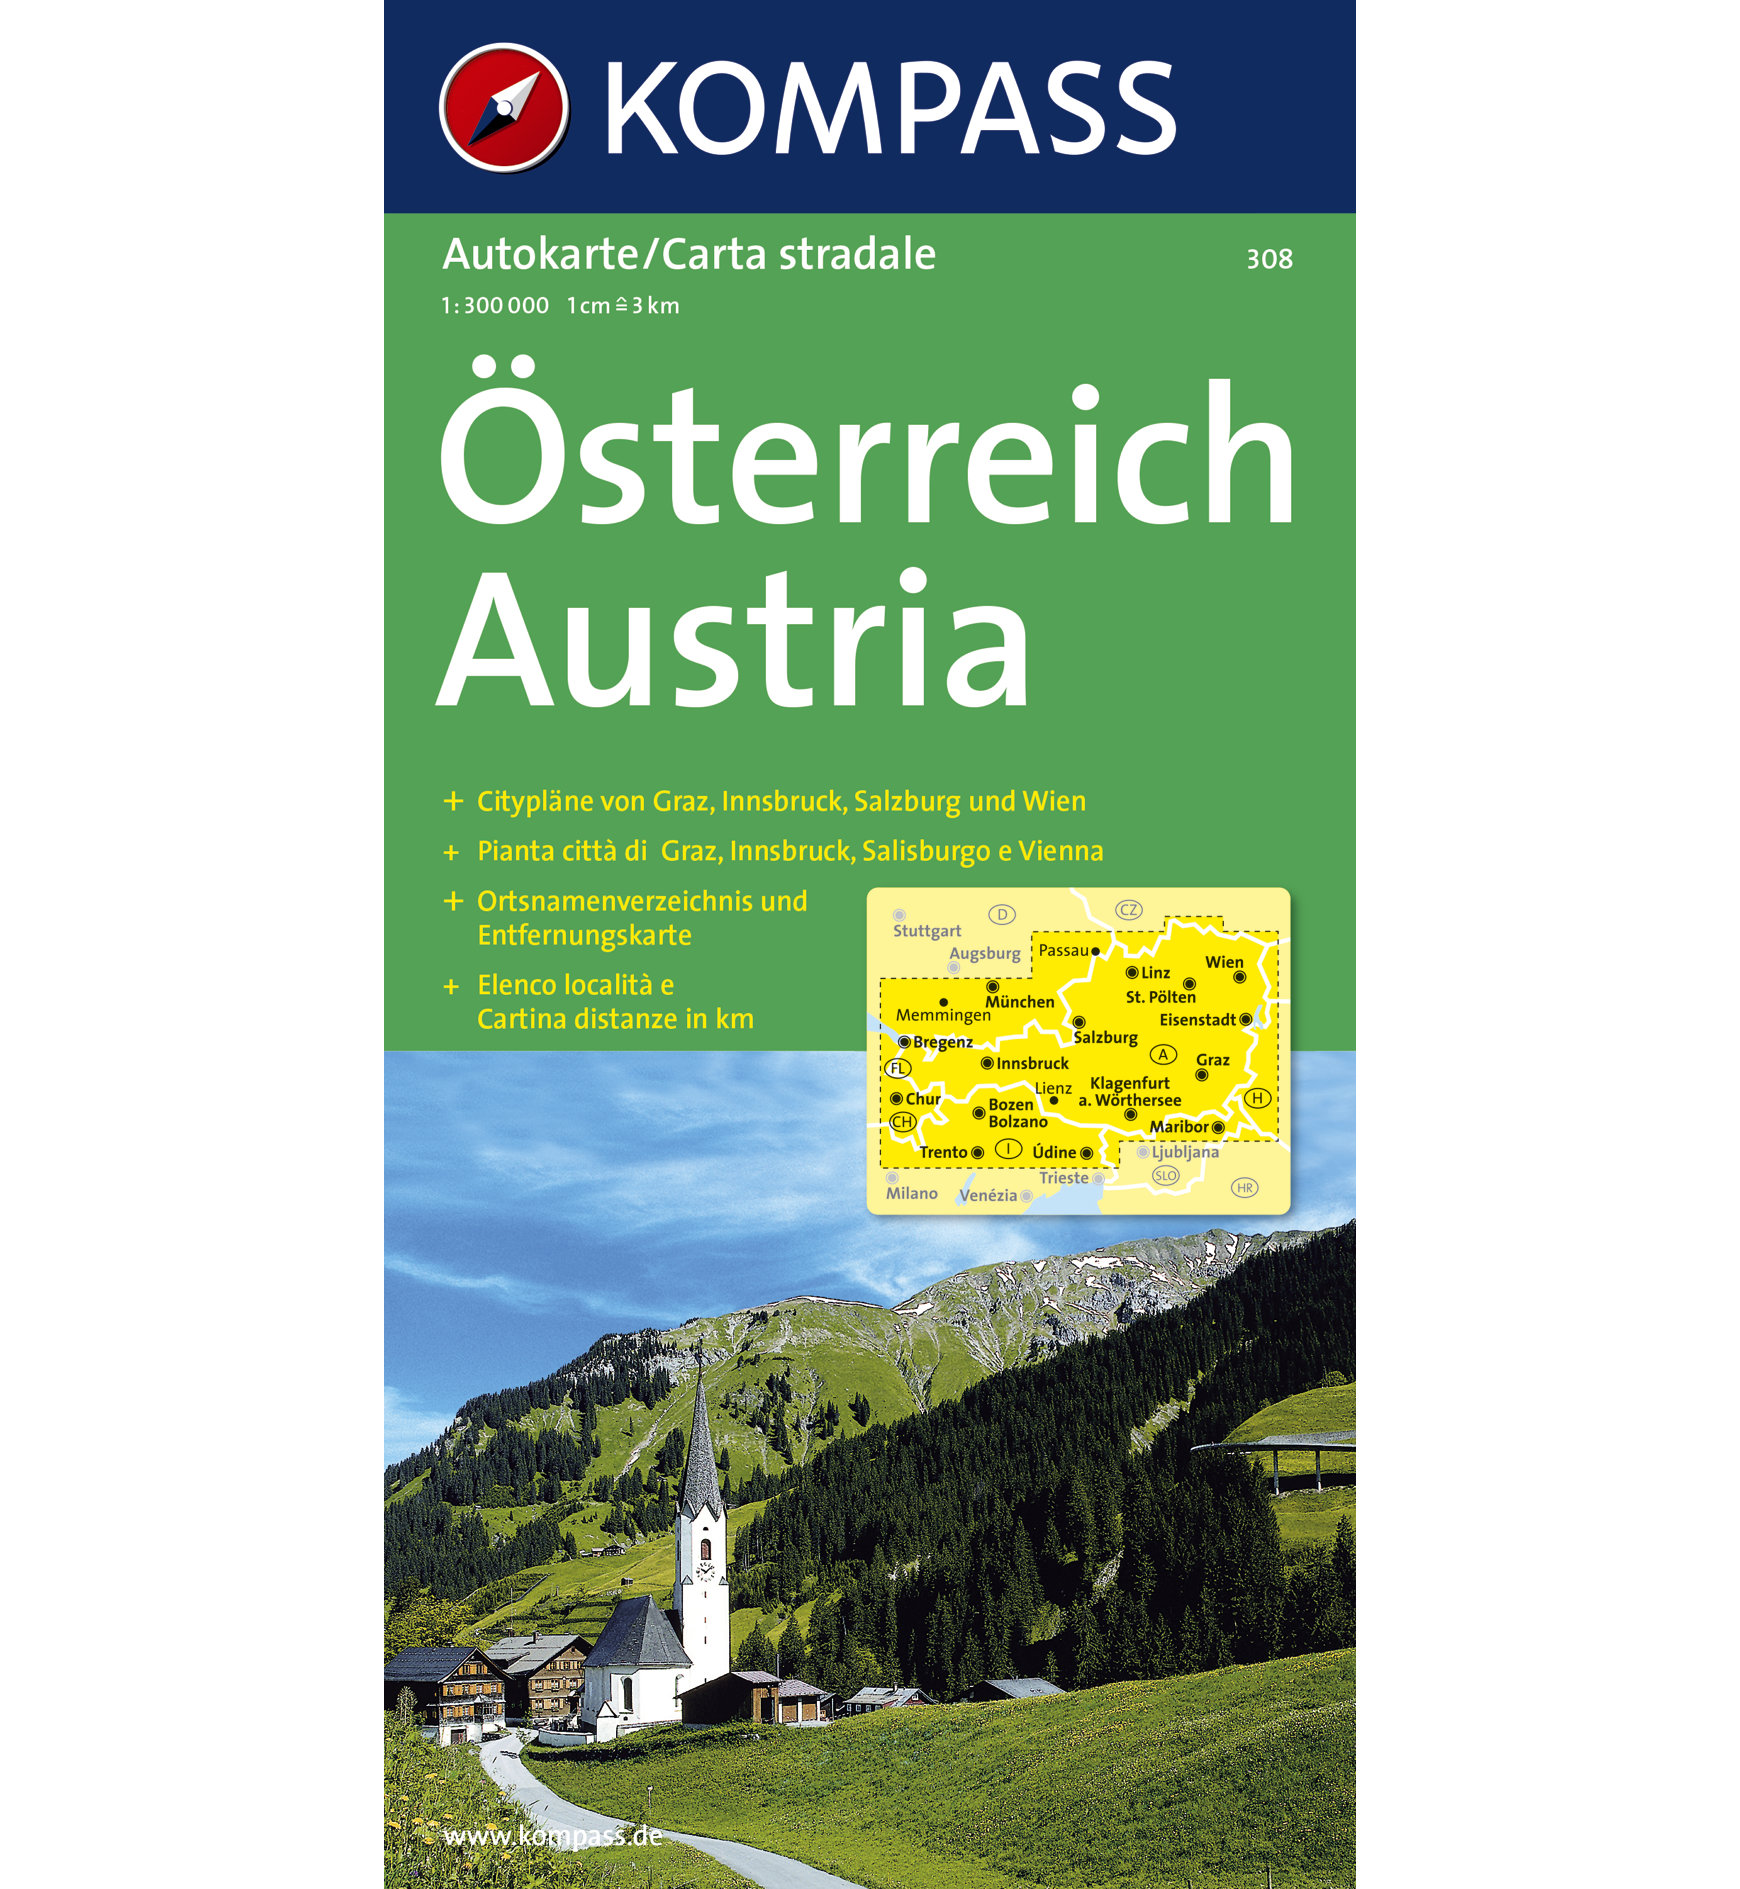 Kompass Karte N.308: Österreich - 1:300.000 Autokarte | Sportler.com